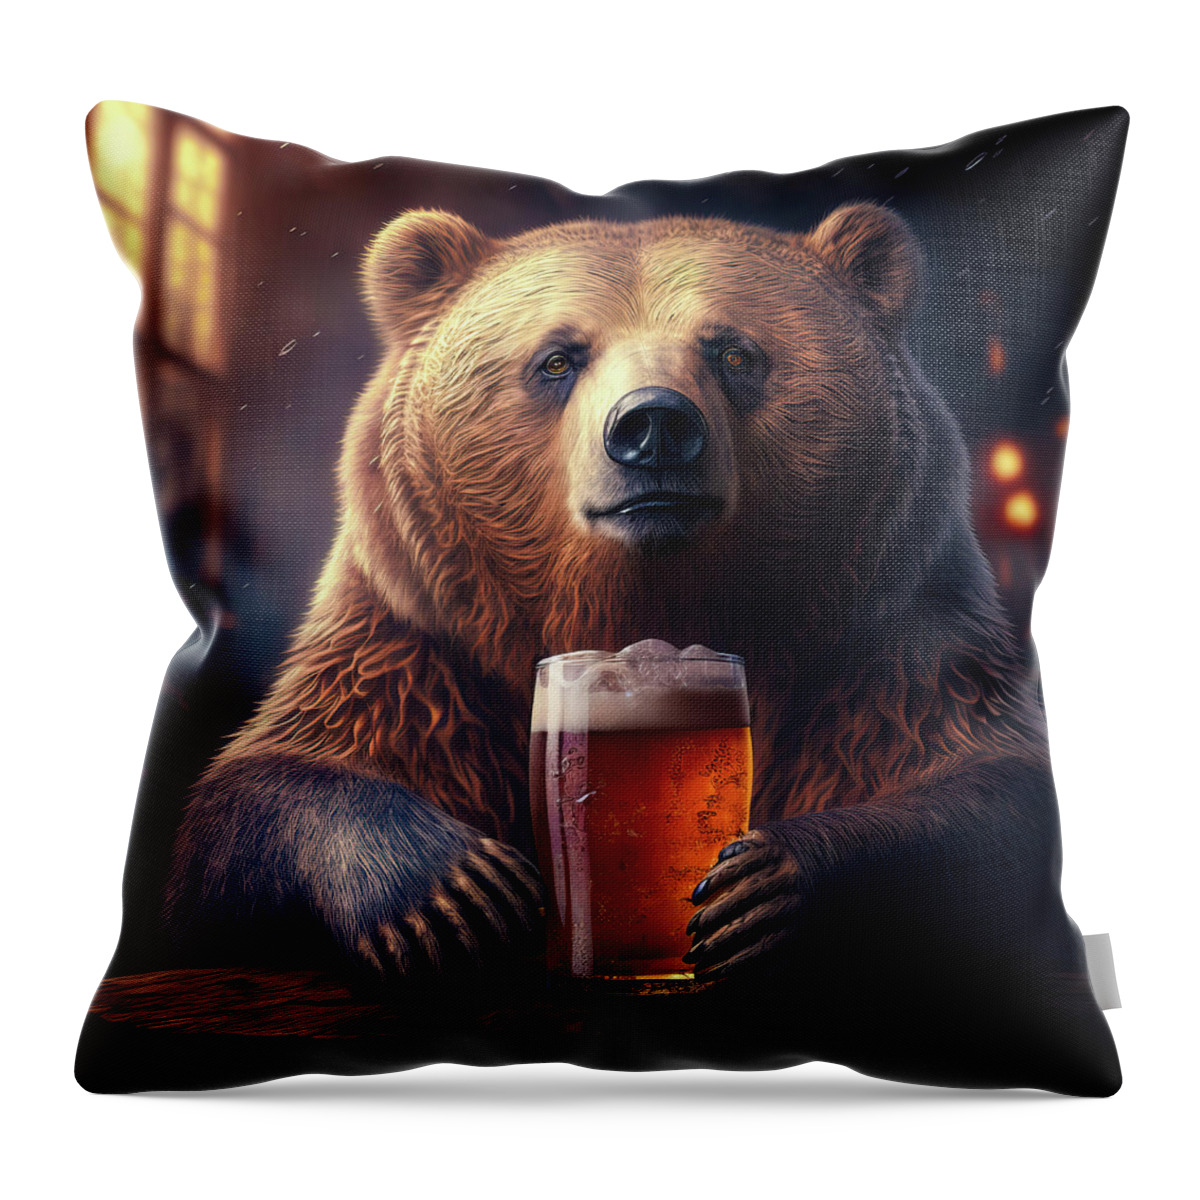 Bear Throw Pillow featuring the digital art Bear Beer Buddy 01 by Matthias Hauser